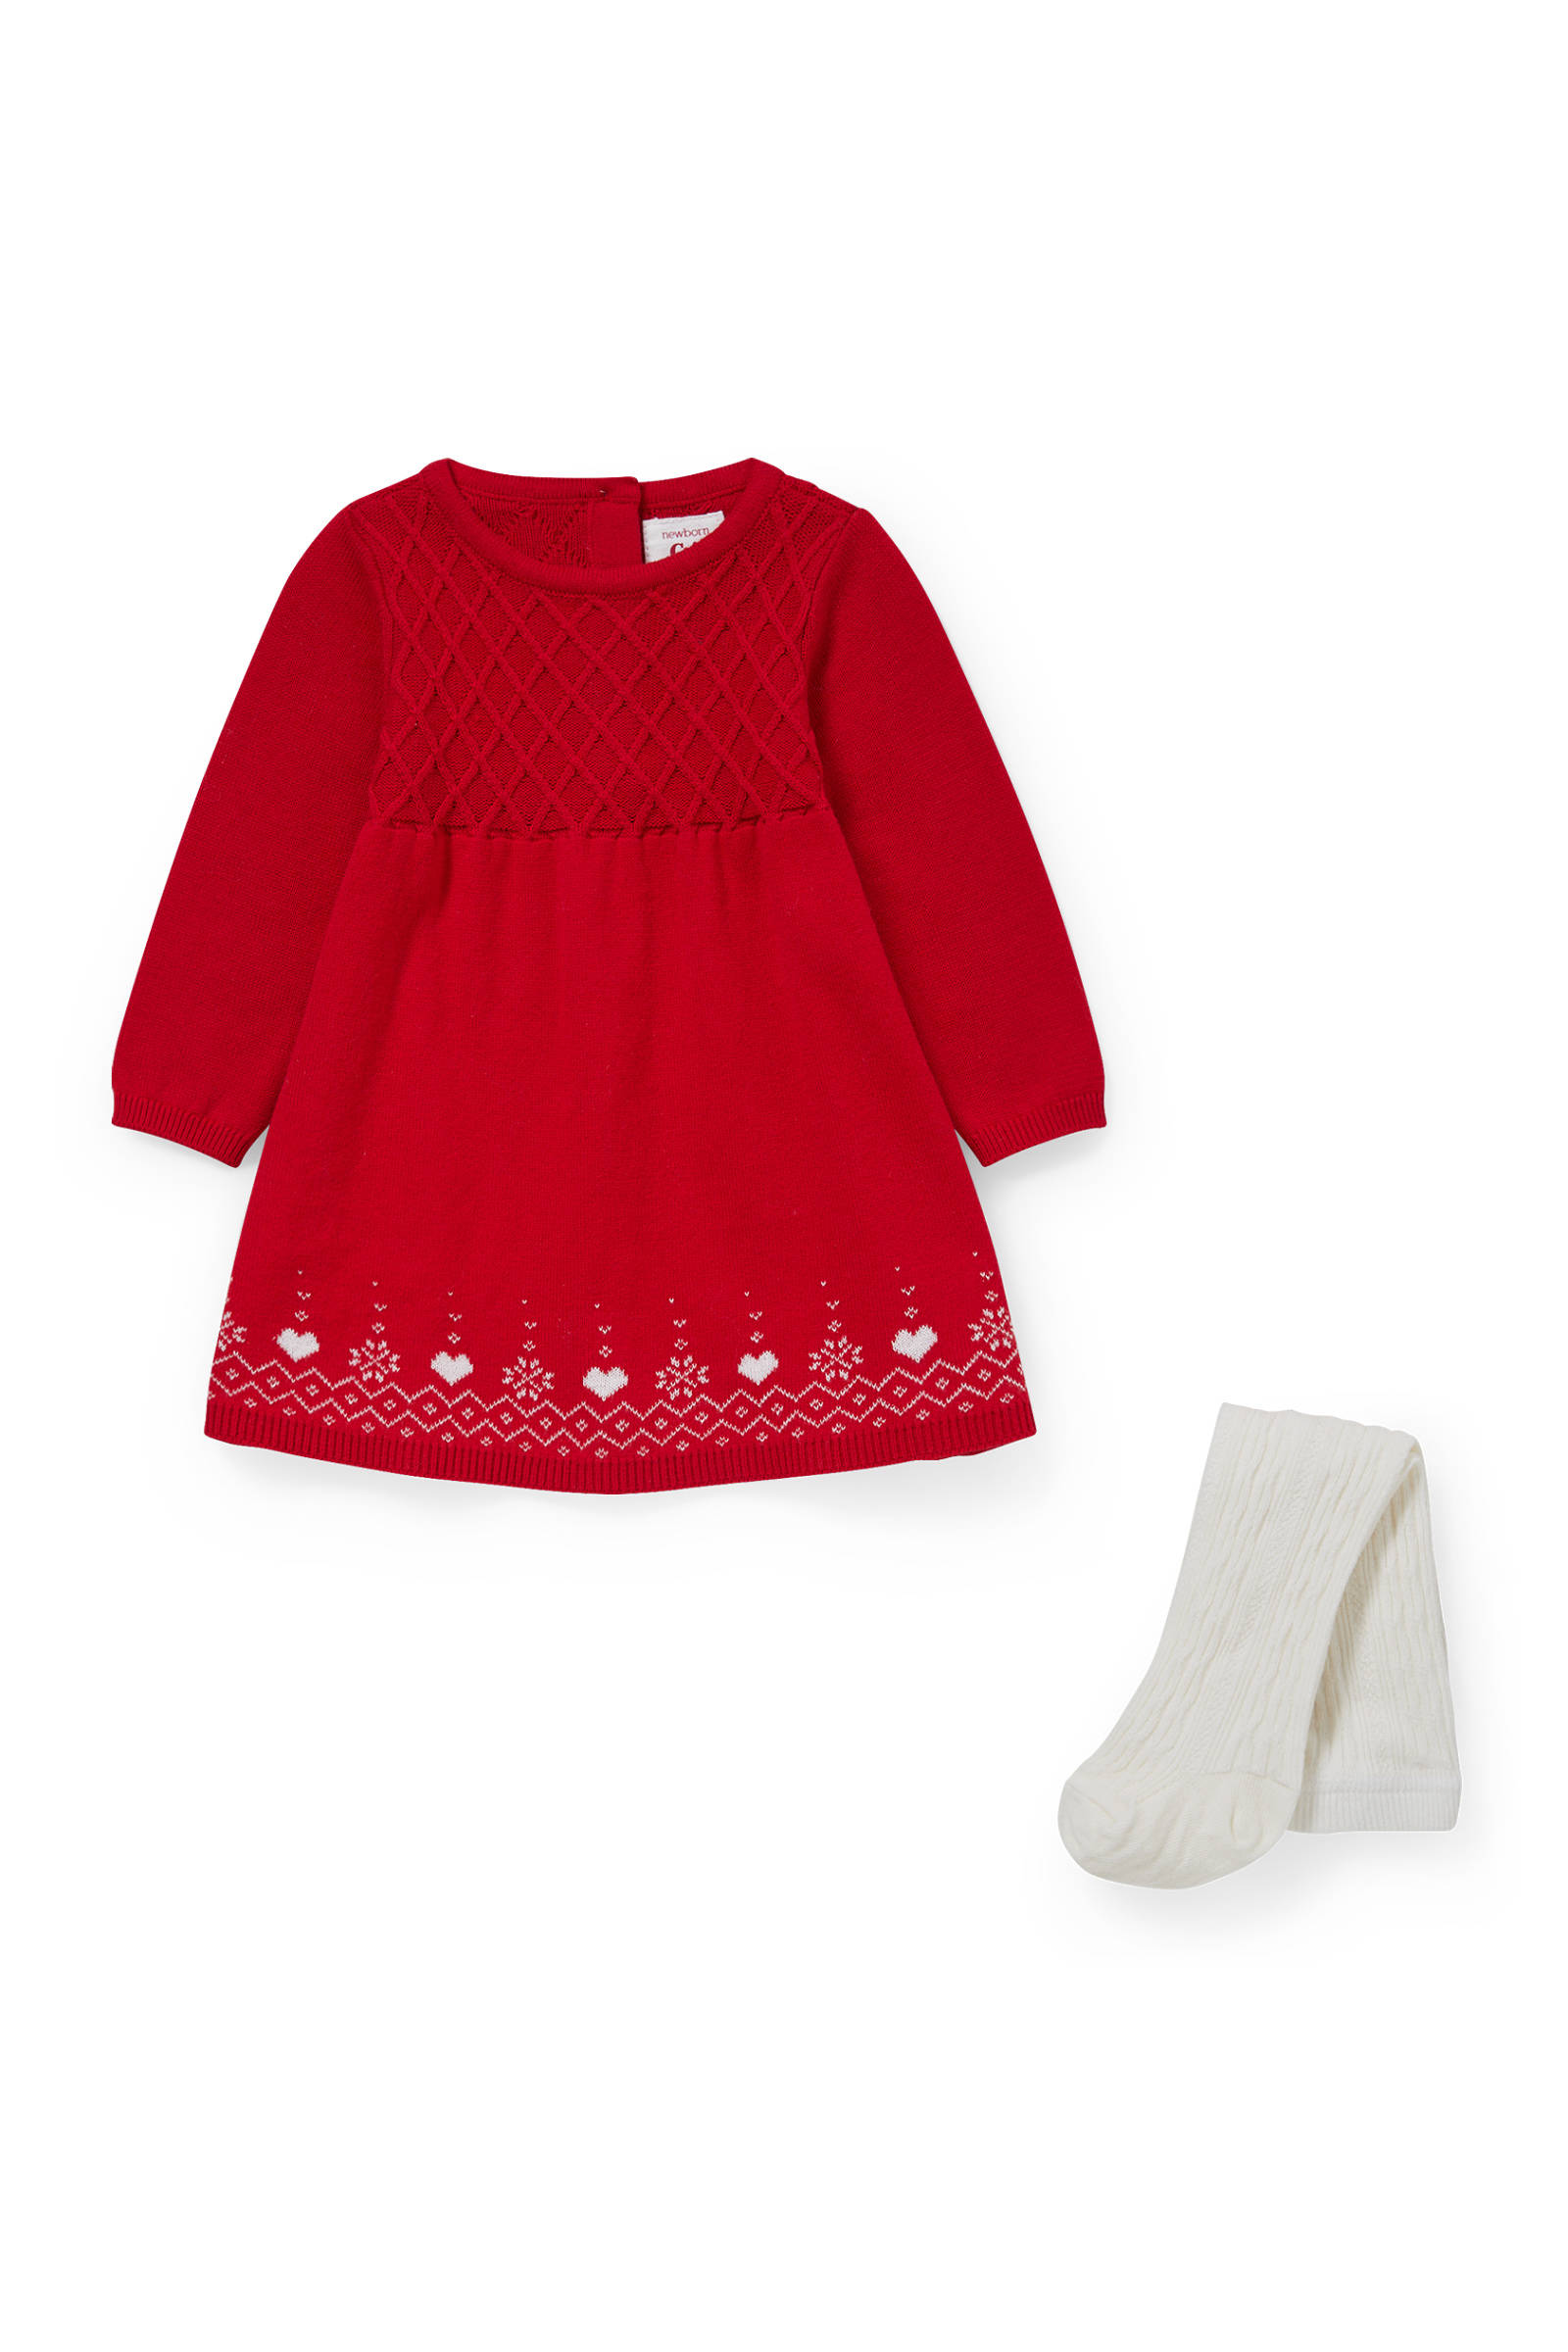 Amazon Meisjes Kleding Jurken Gebreide Jurken meisjesjurk 25657-jurk knit Enigma Baby 